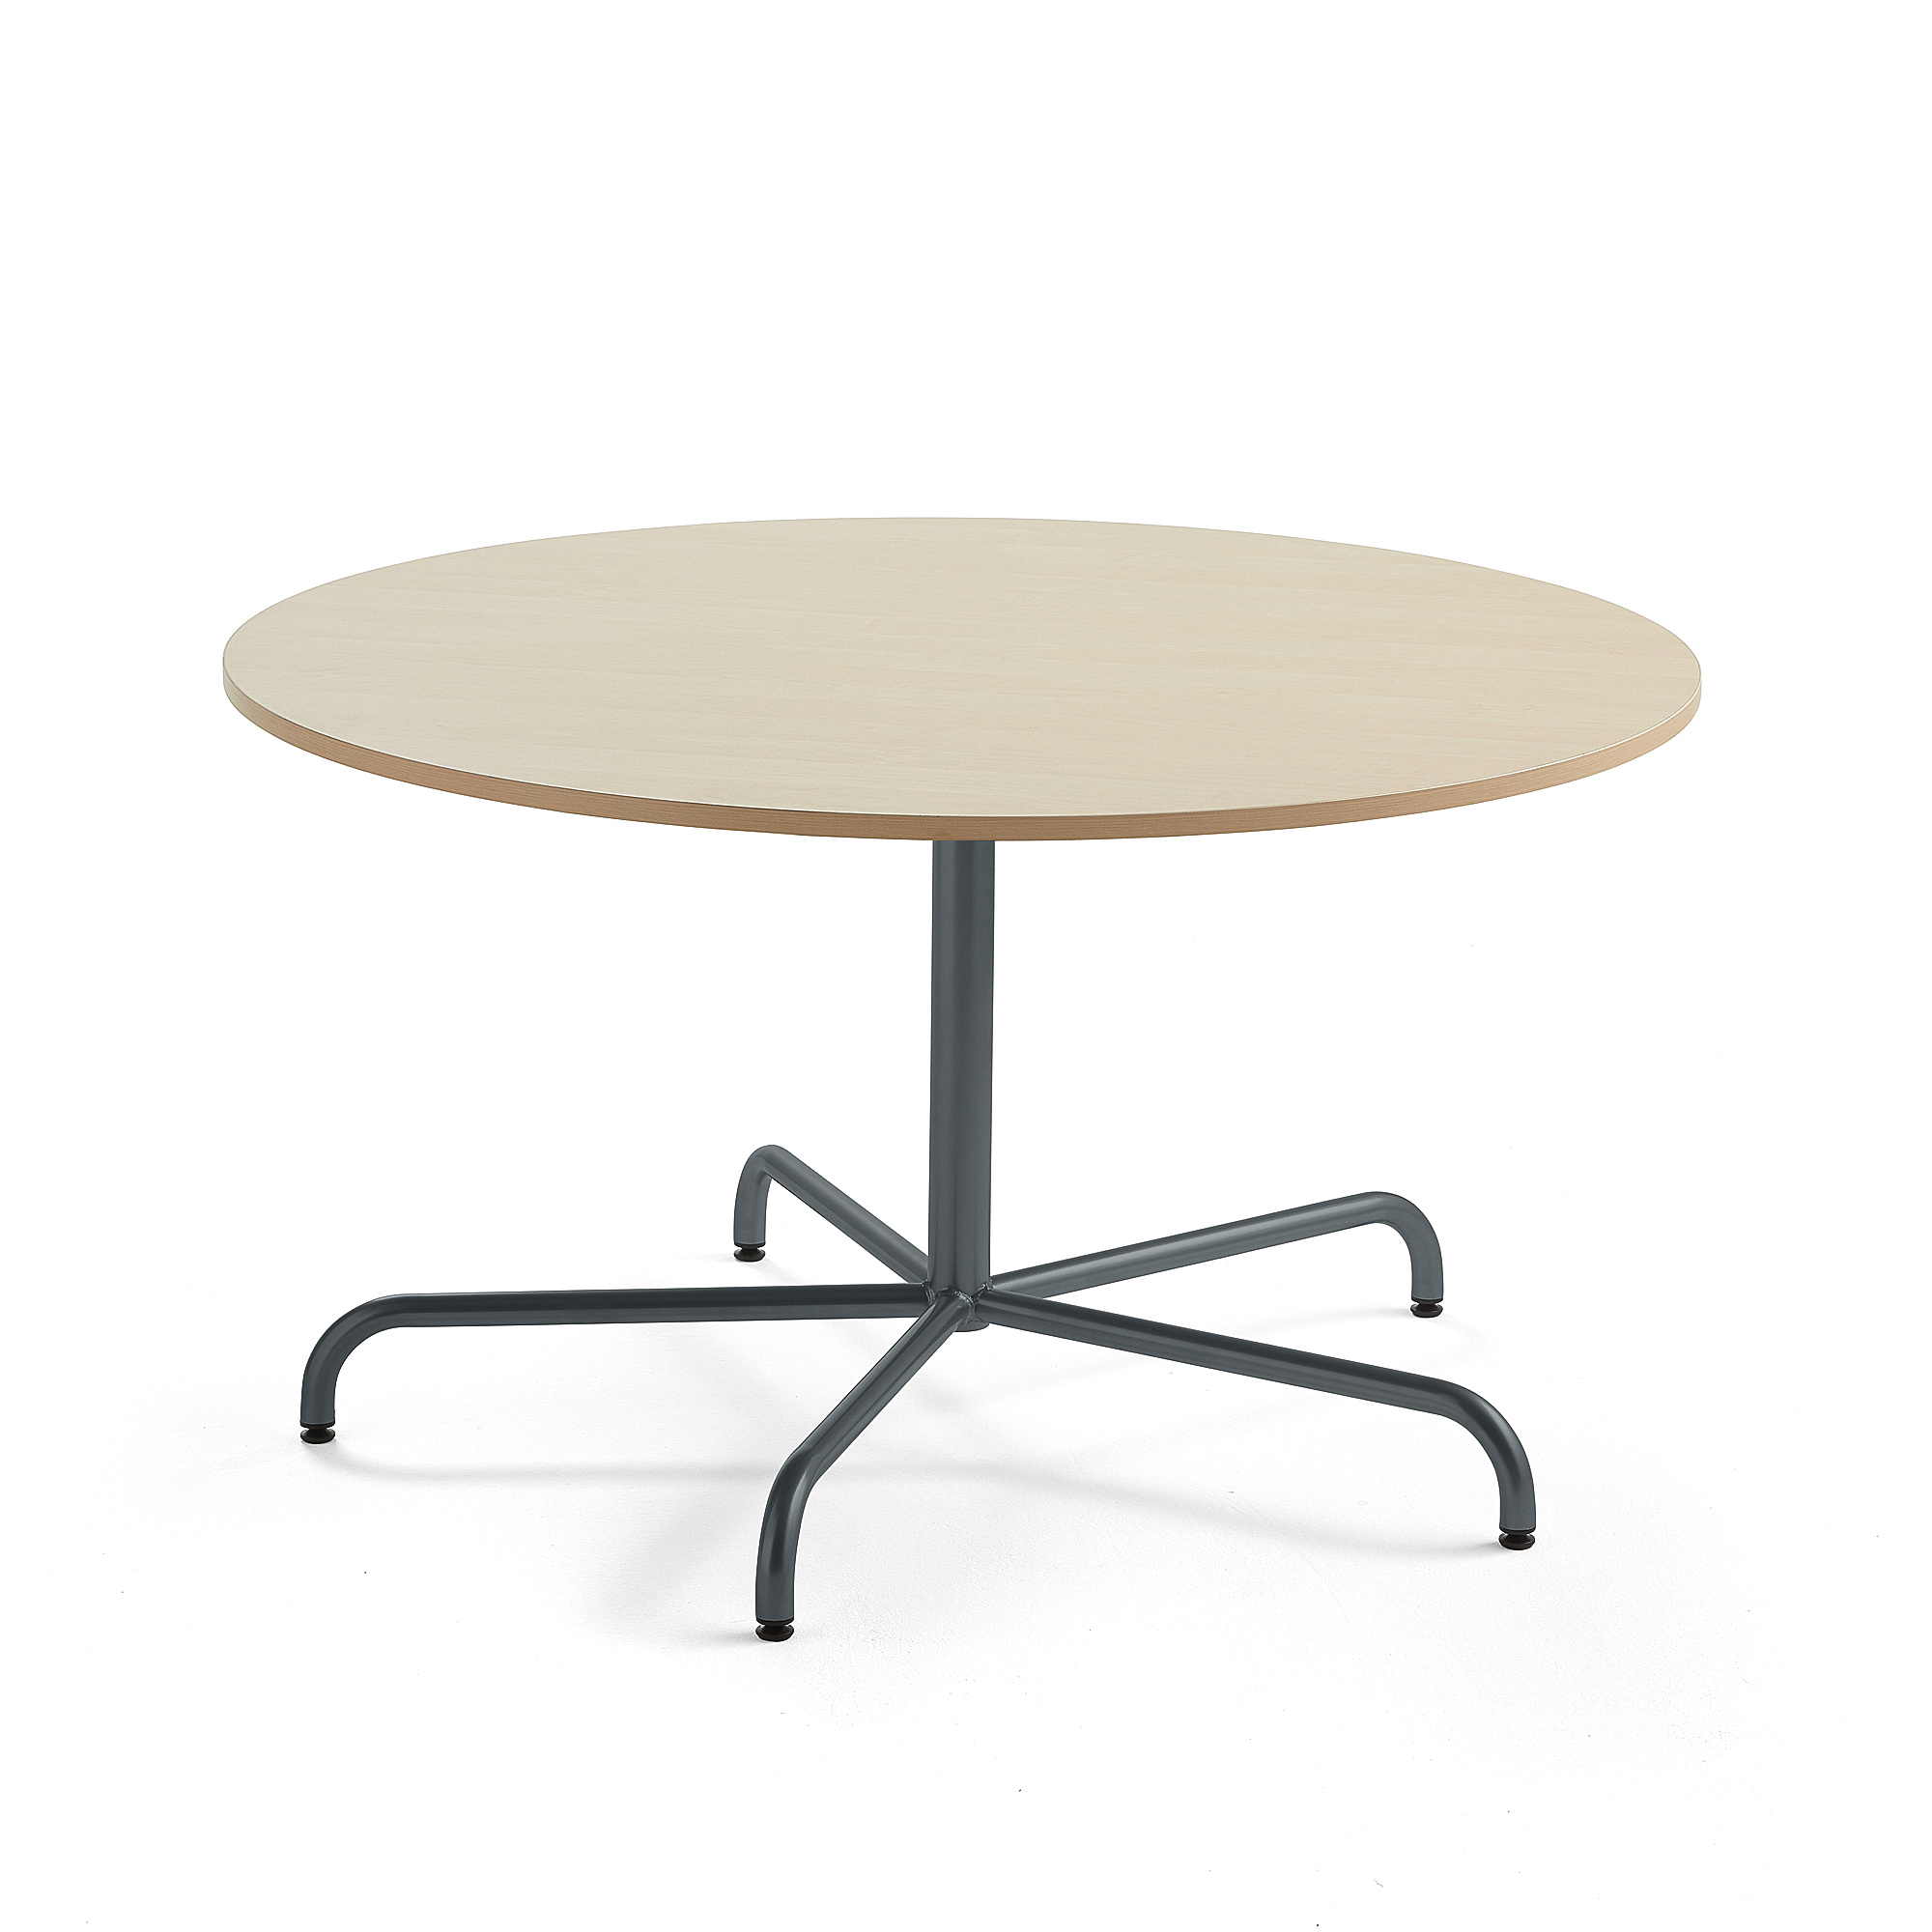 Stůl PLURAL, Ø1300x720 mm, akustická HPL deska, bříza, antracitově šedá